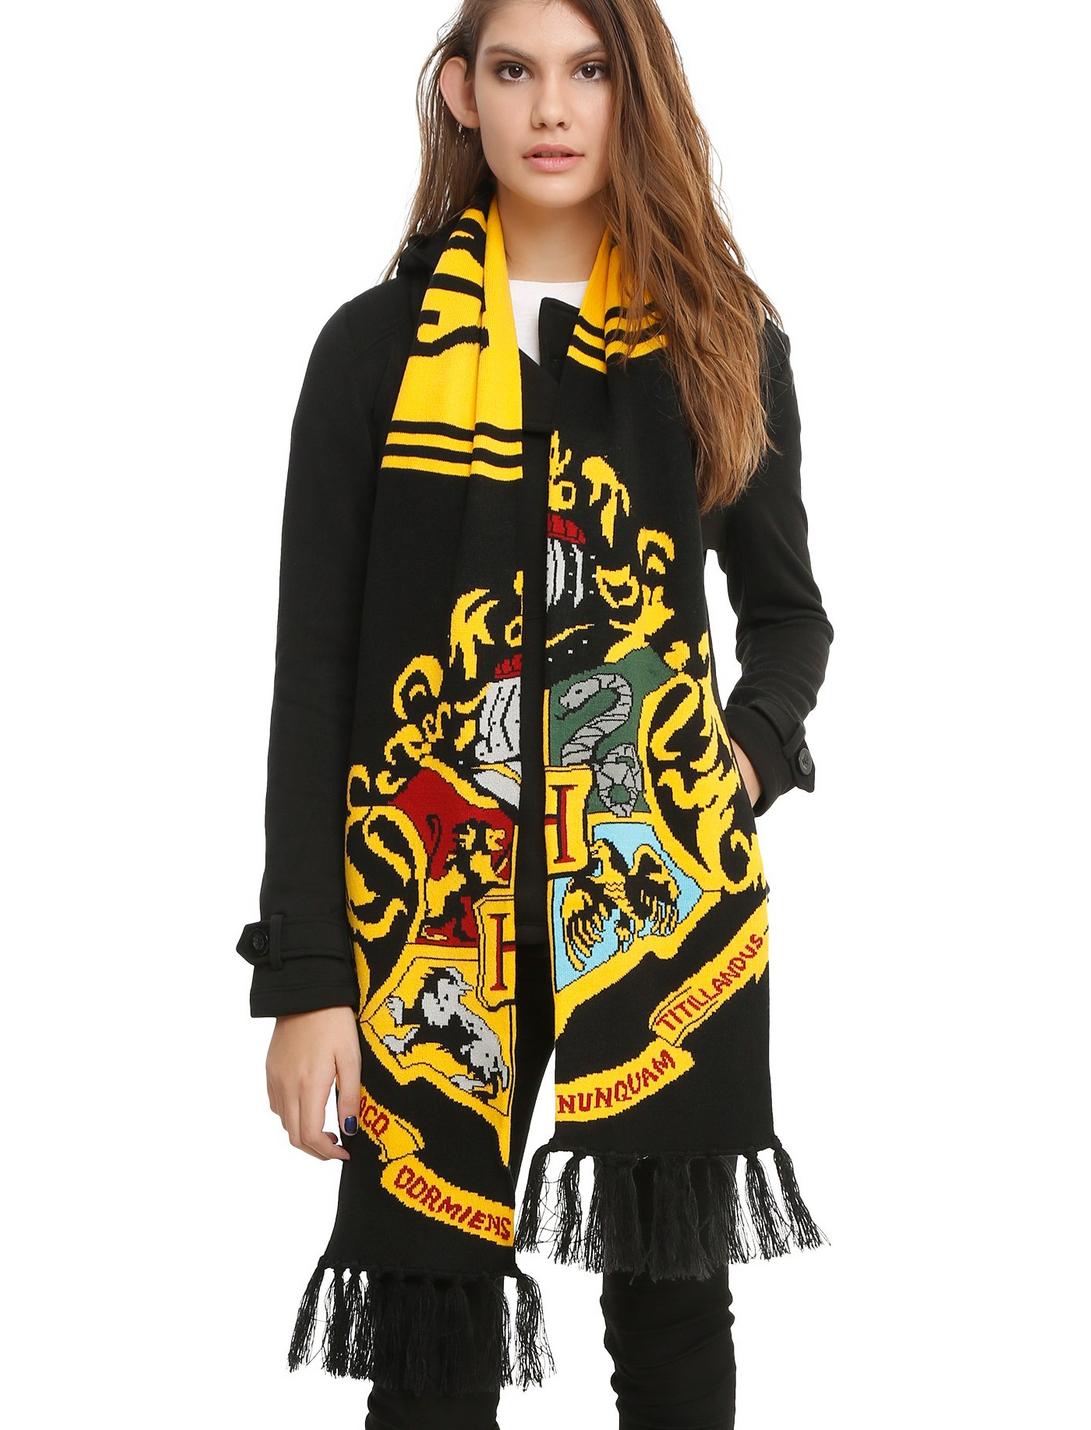 Harry Potter Hogwarts Crest Knit Scarf, , hi-res